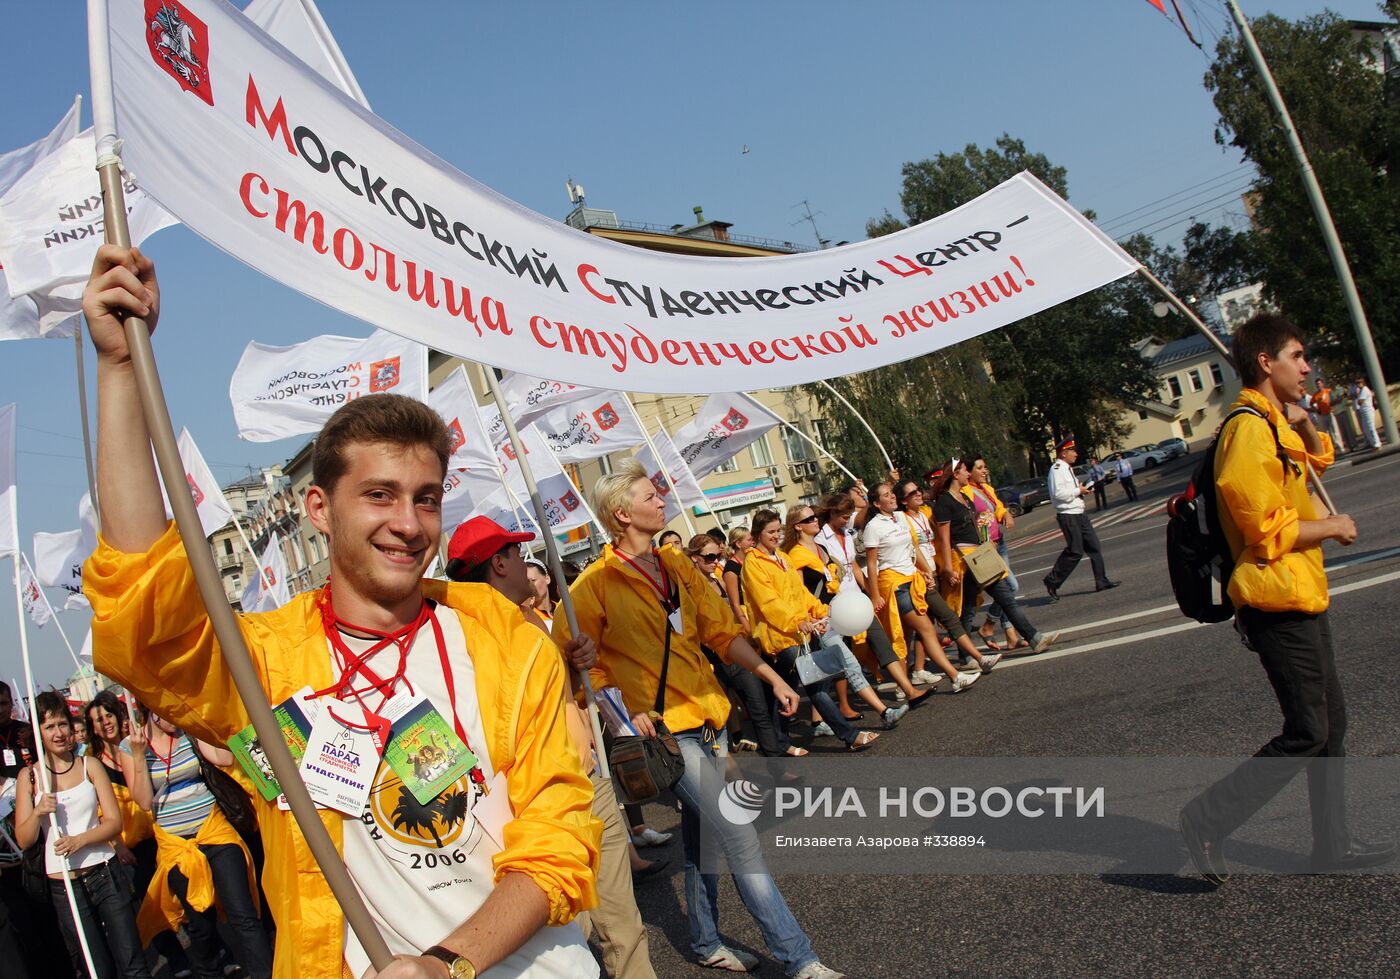 Парад московского студенчества